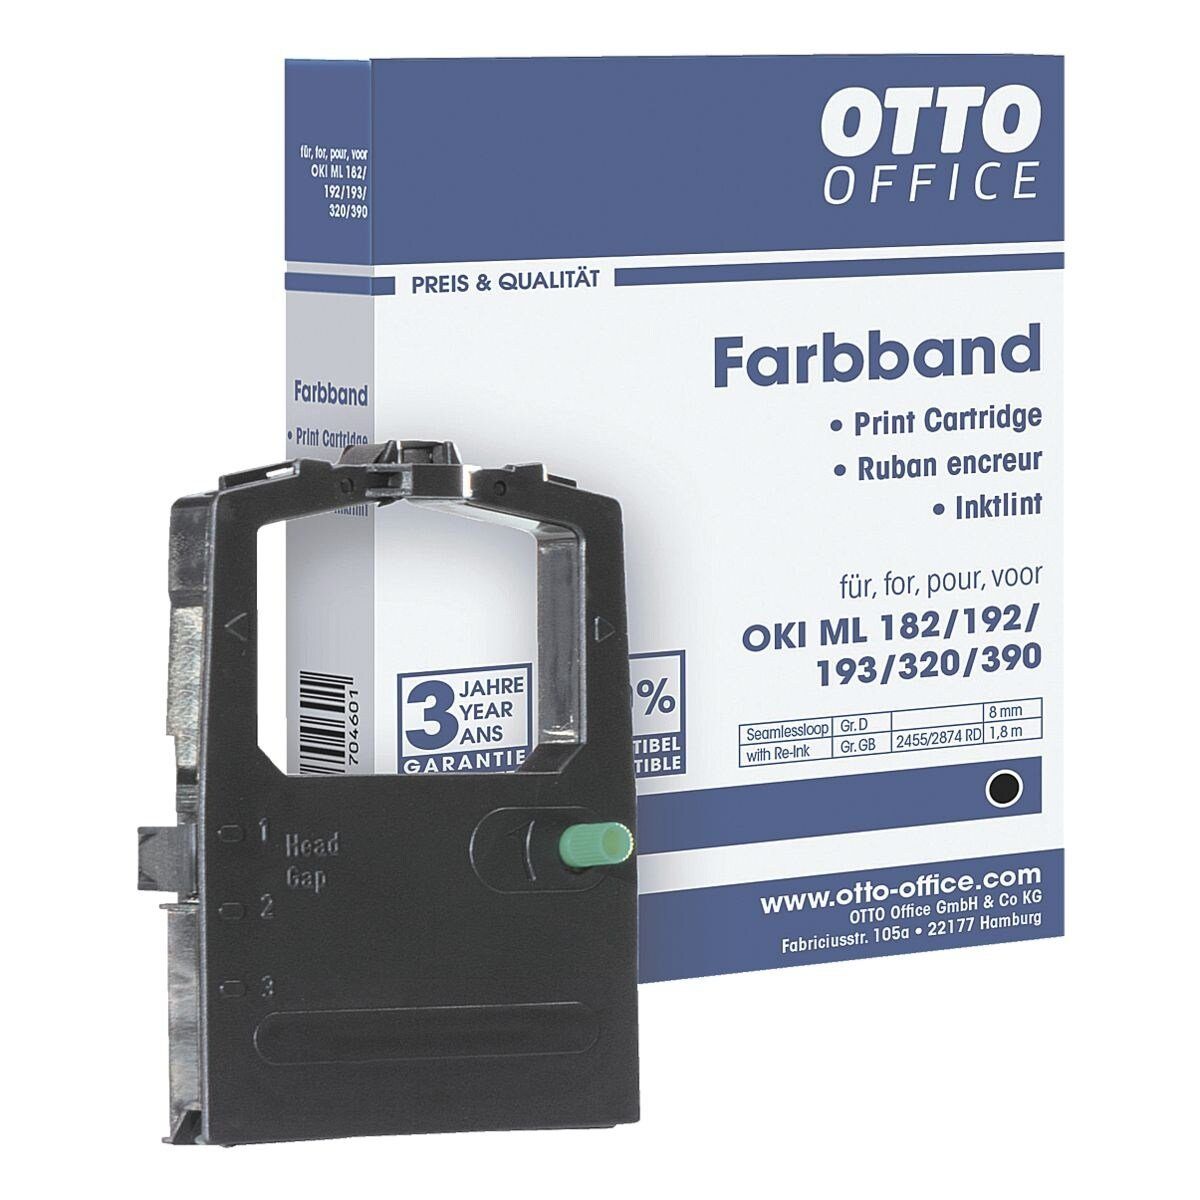 Otto Office  Office Druckerband OKI ML, Farbband für Nadeldrucker, schwarz